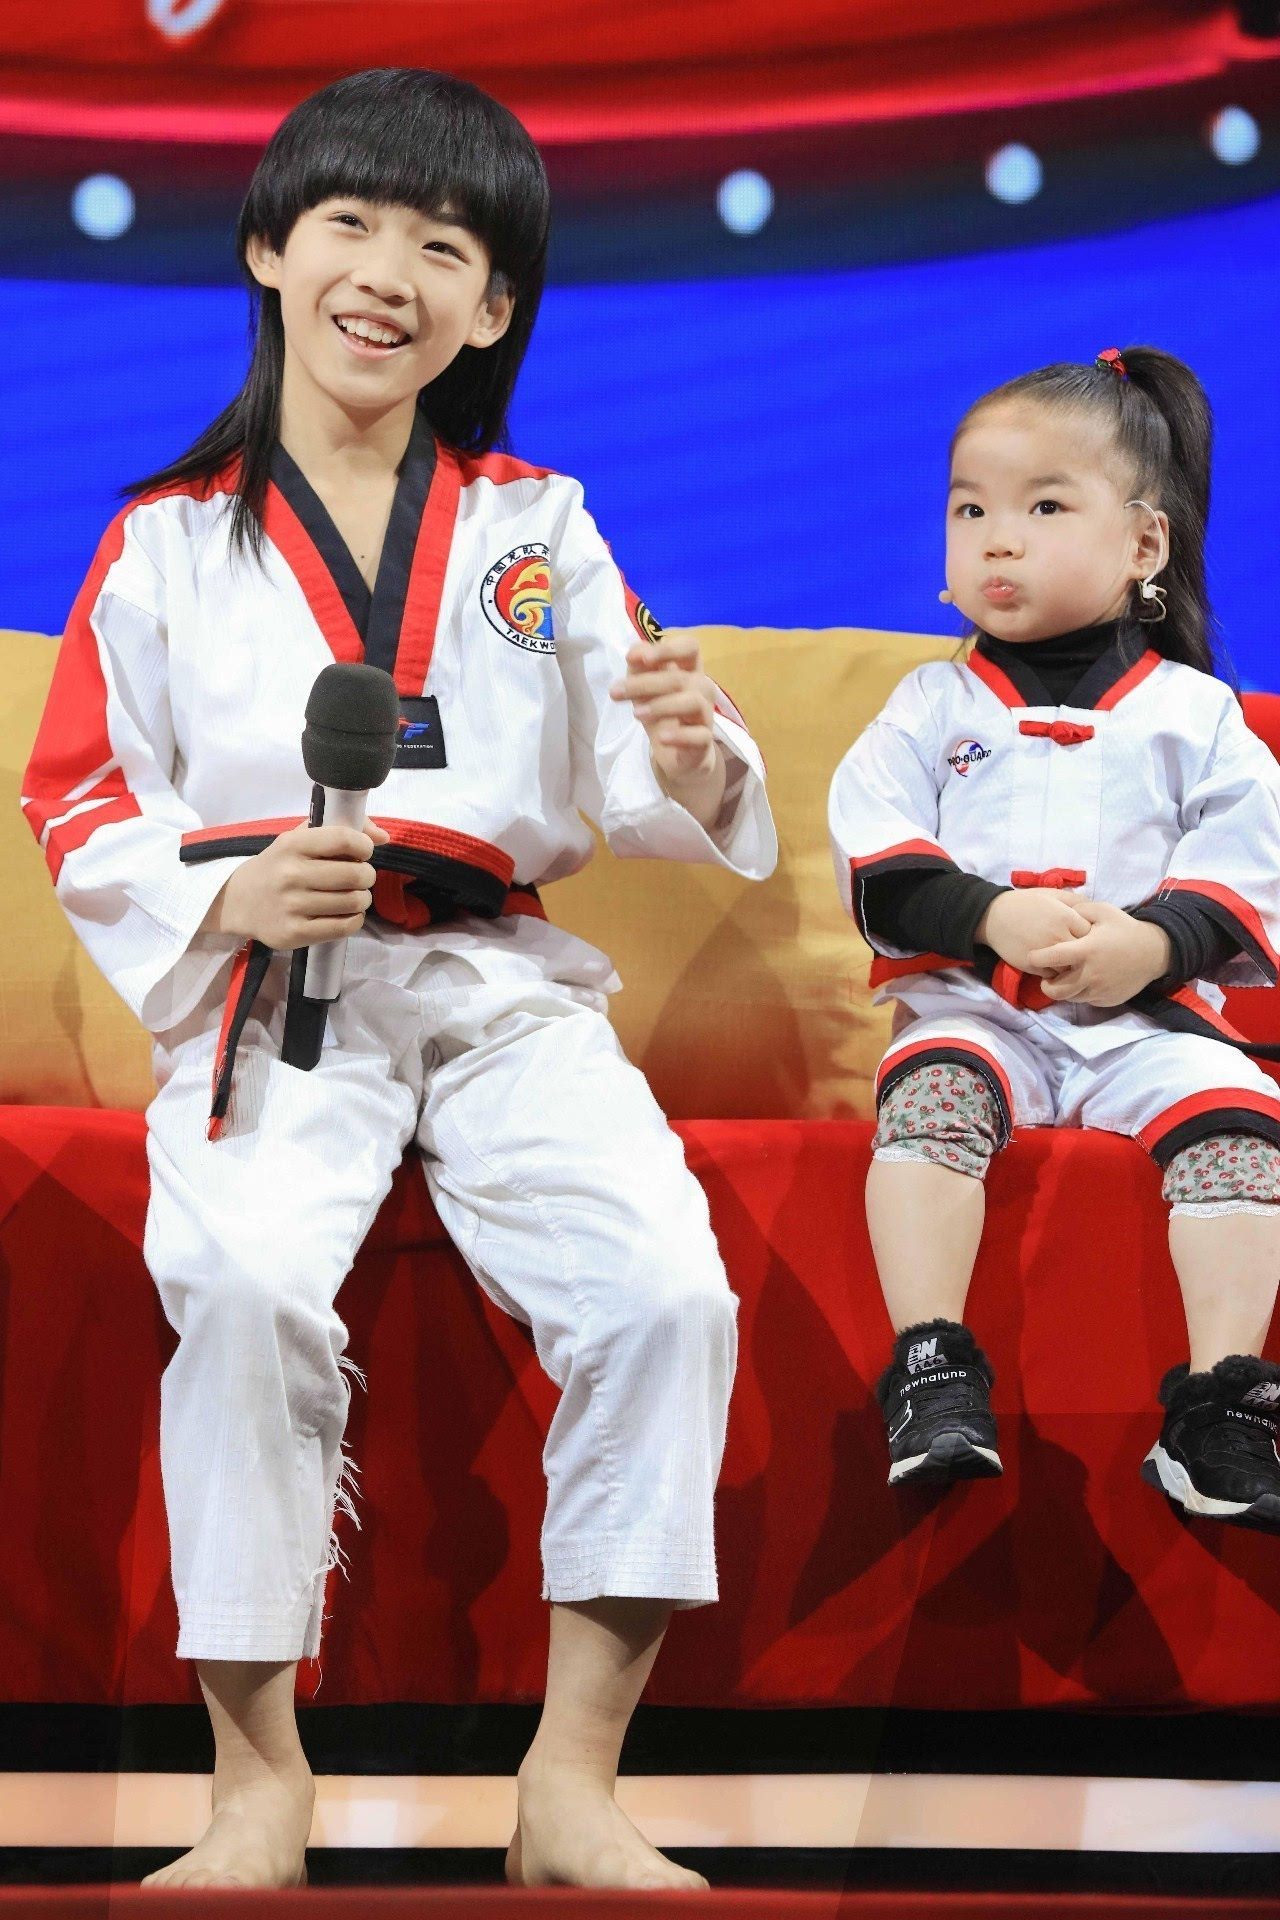 第三期节目中,来自浙江的龙拳小子林秋楠携甜心妹妞妞登上舞台.